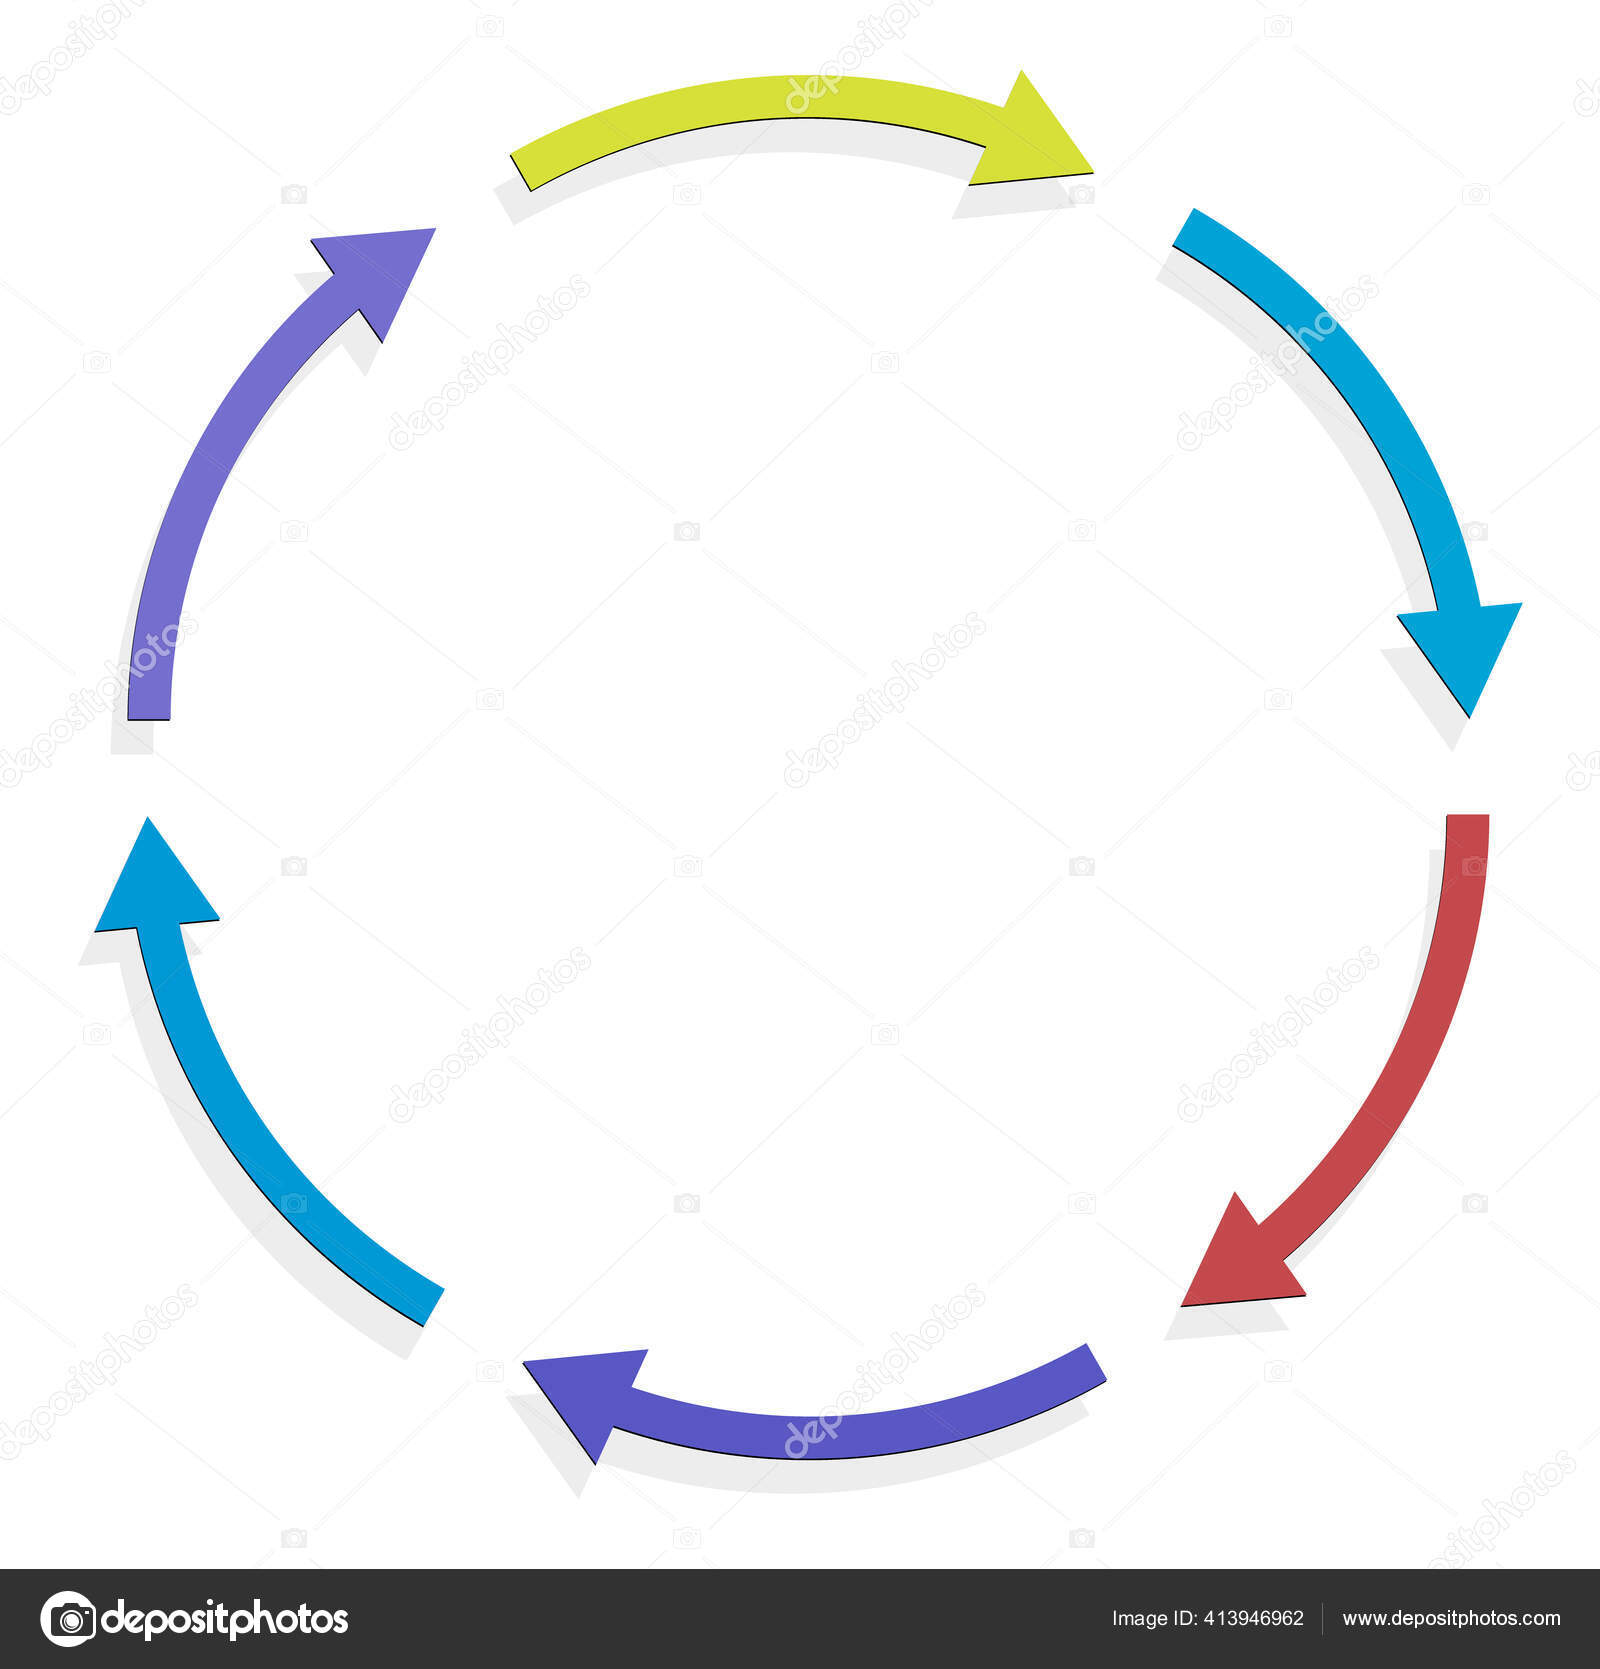 Cycle Cyclical Arrows Circular Concentric Radial Cursor Vector ...